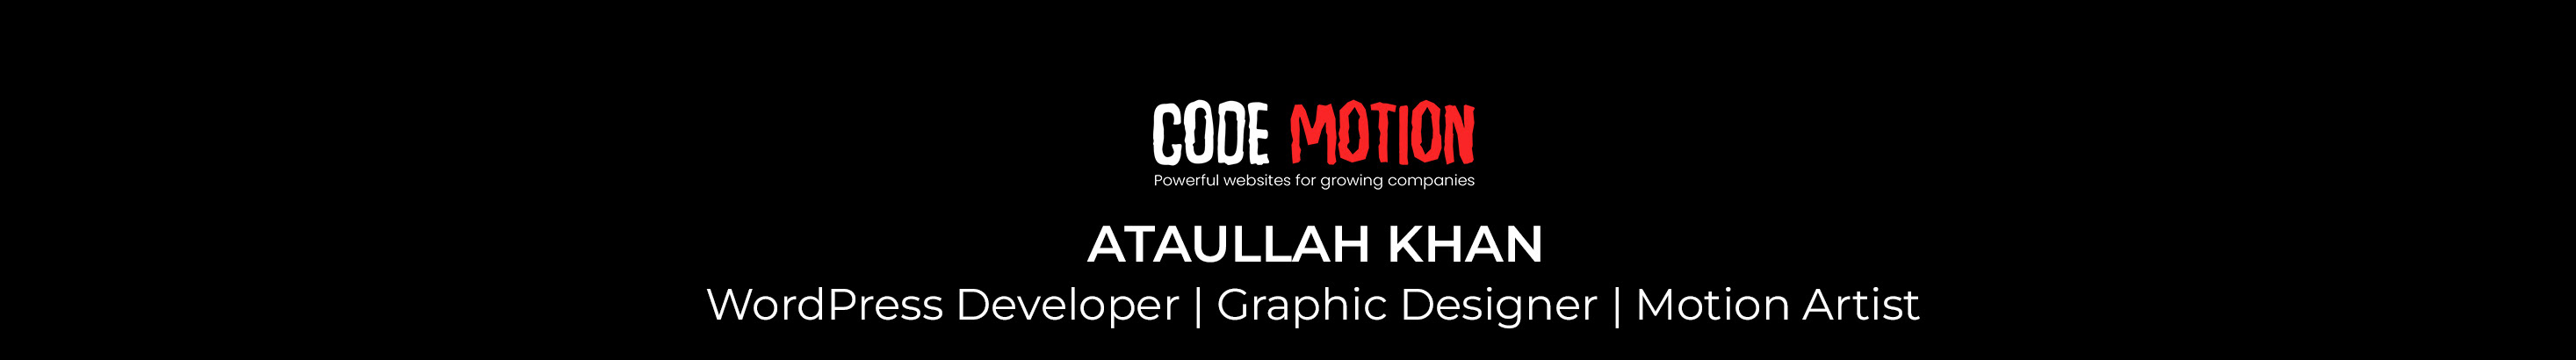 Ataullah Khan's profile banner